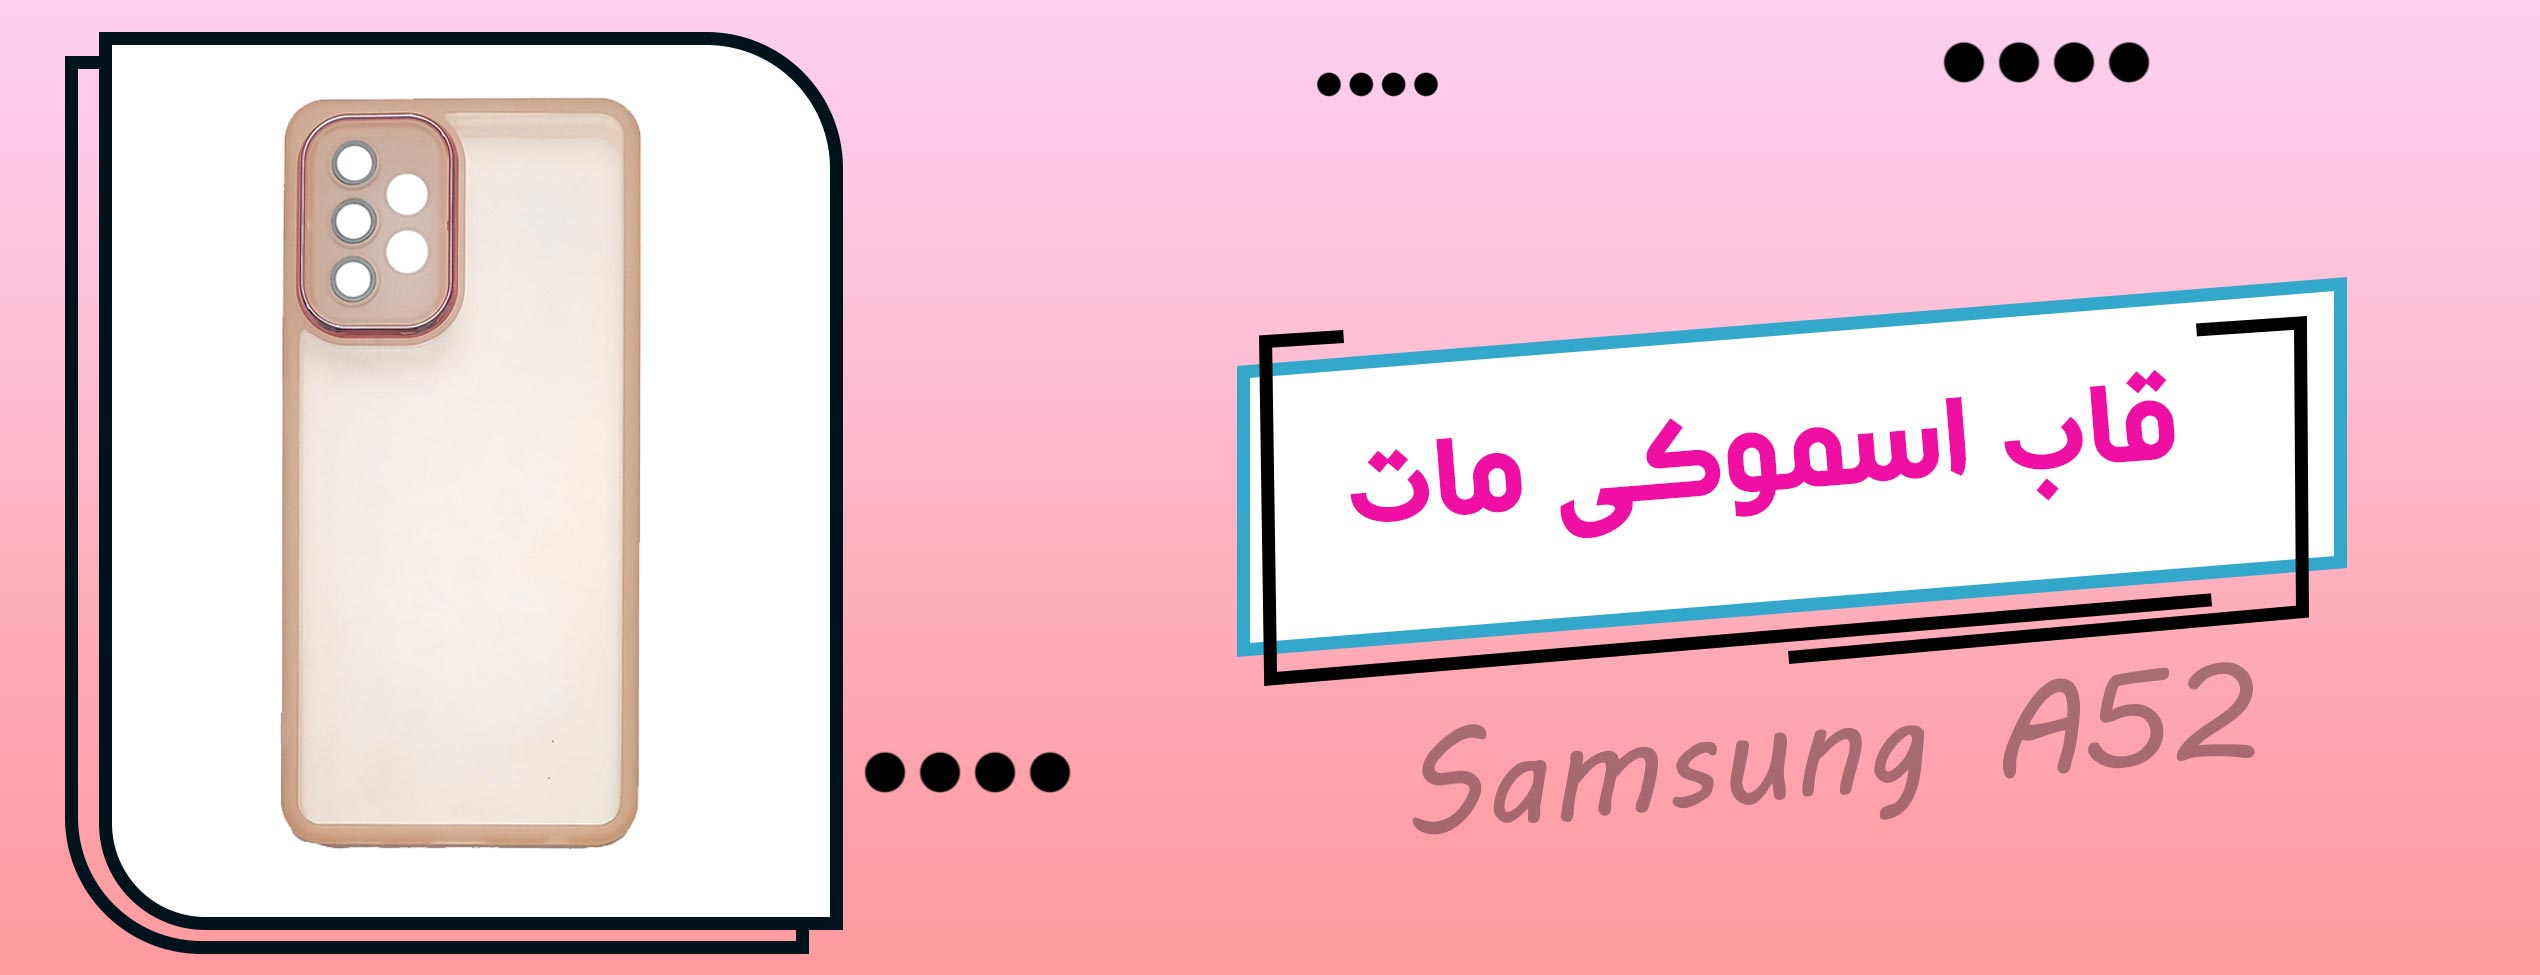 قاب اسموکی مات گوشی موبایل سامسونگ Samsung A52